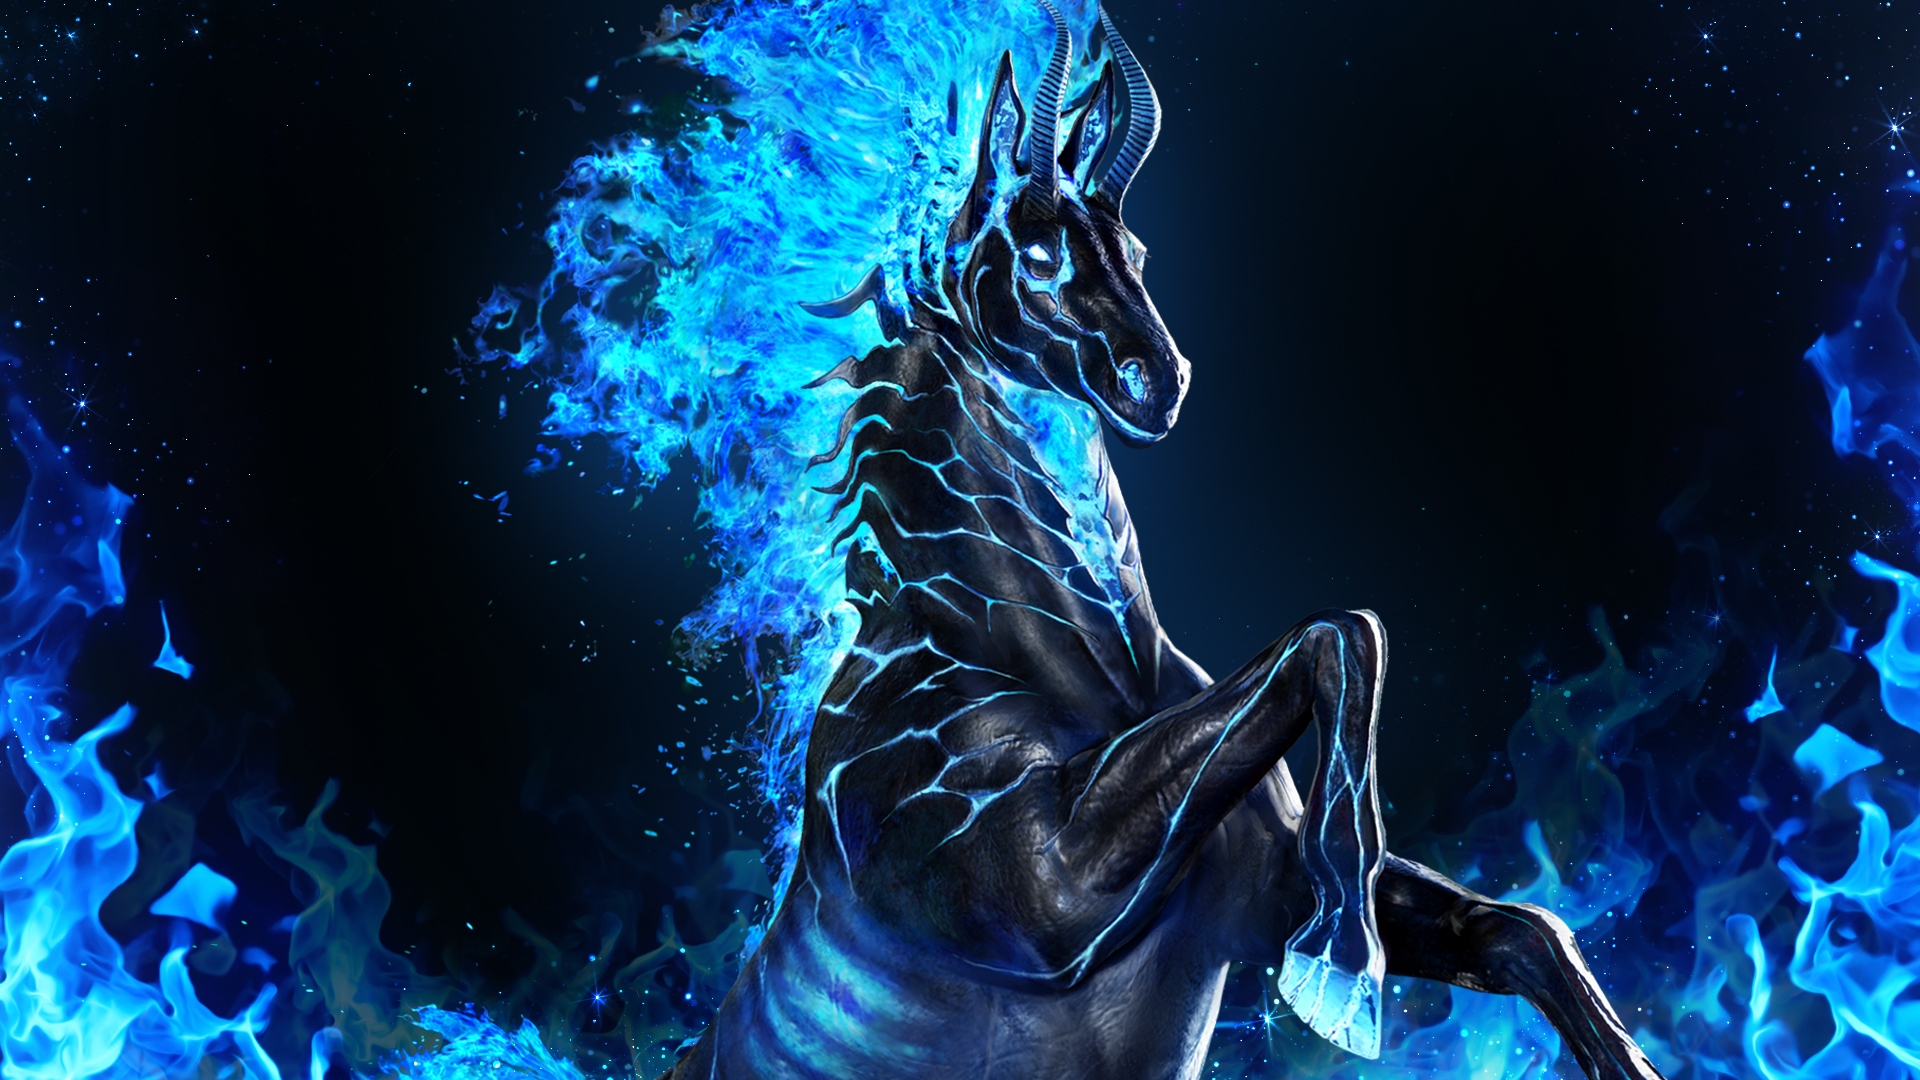 Black Desert Online’s Festa Updates Bring Mythical Doom Horse, New PvP Season, and More